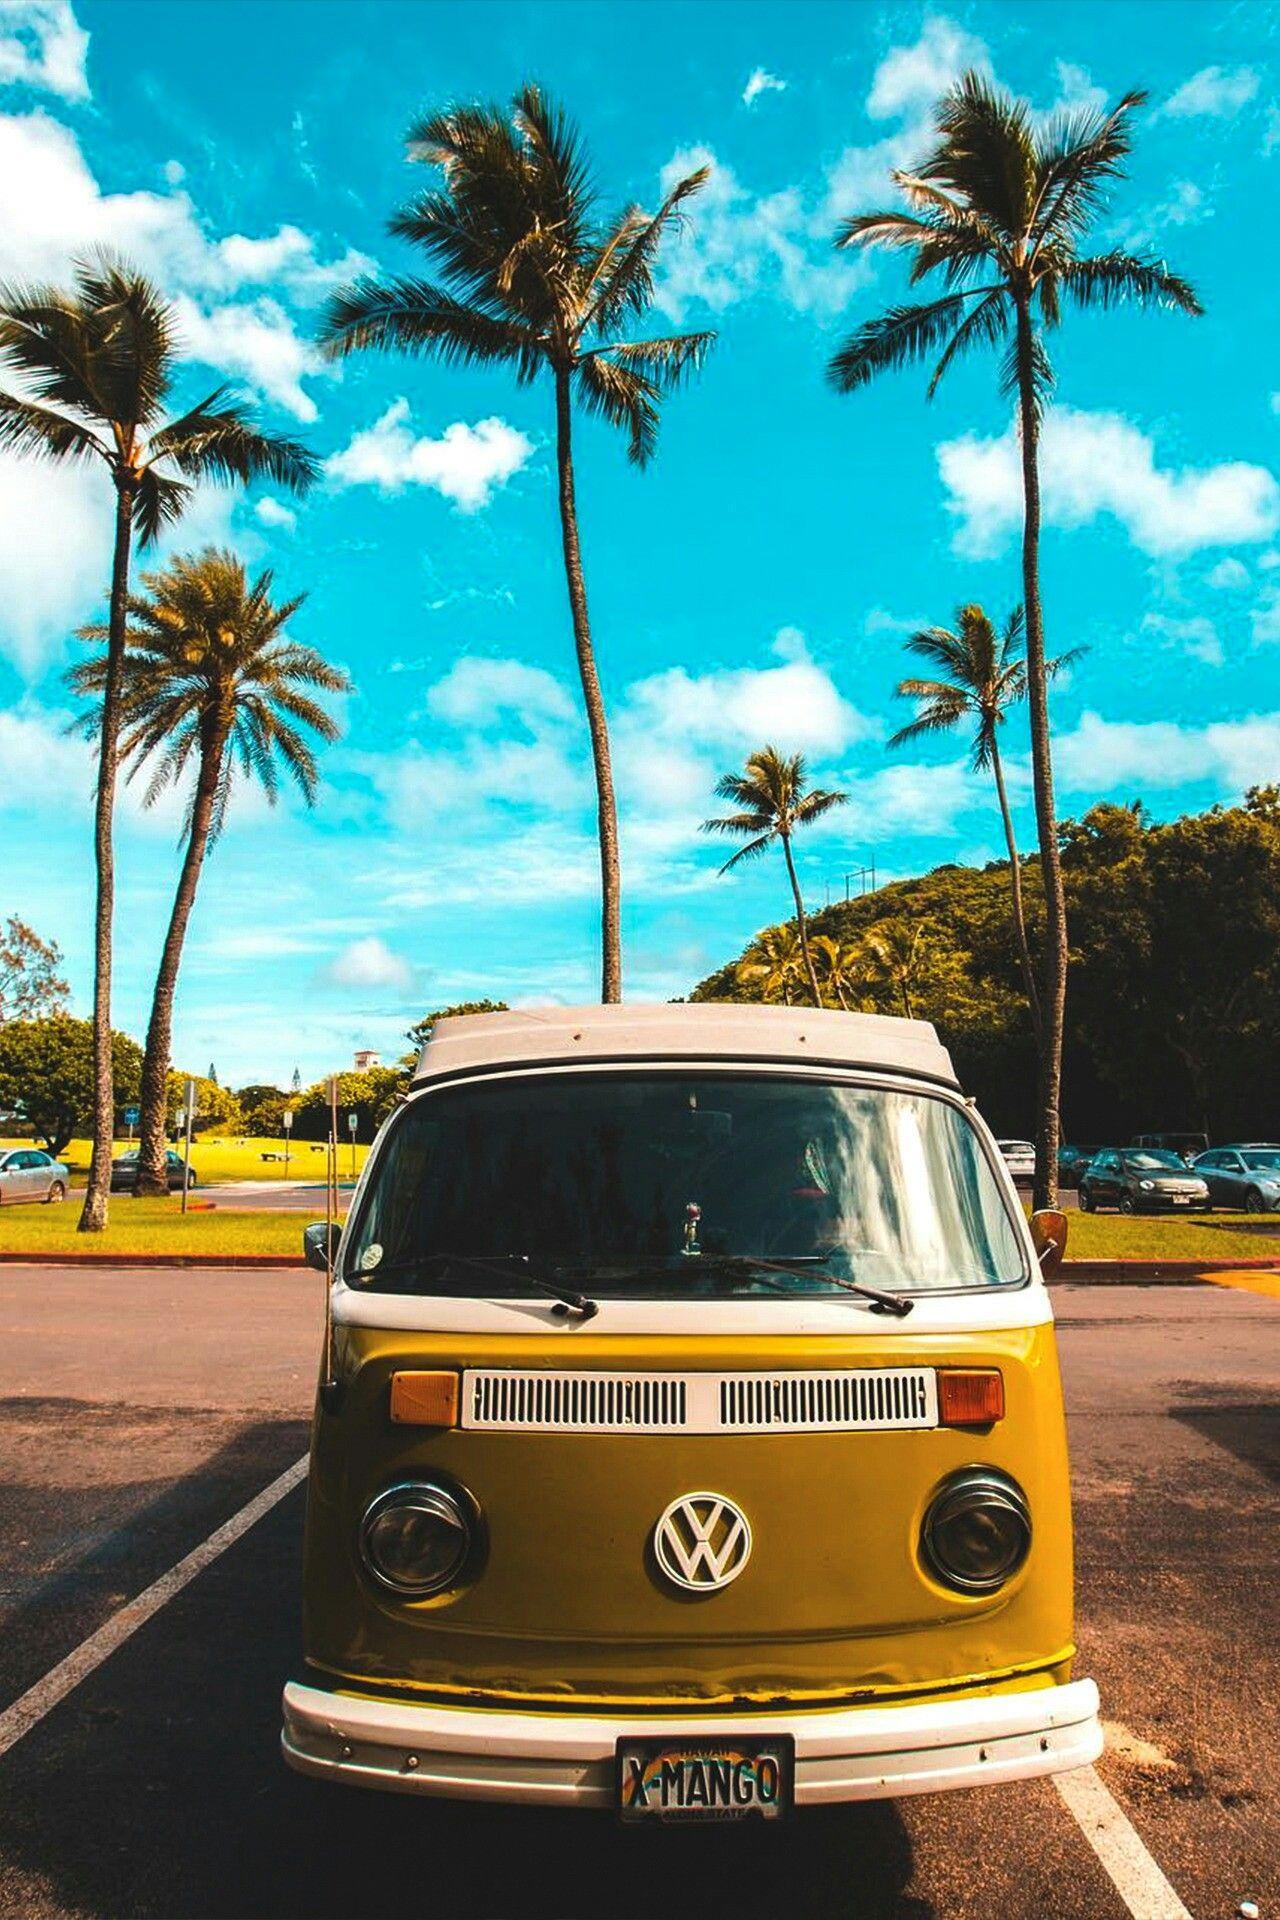 Charm of hippie VW camper van is irresistible. Summer